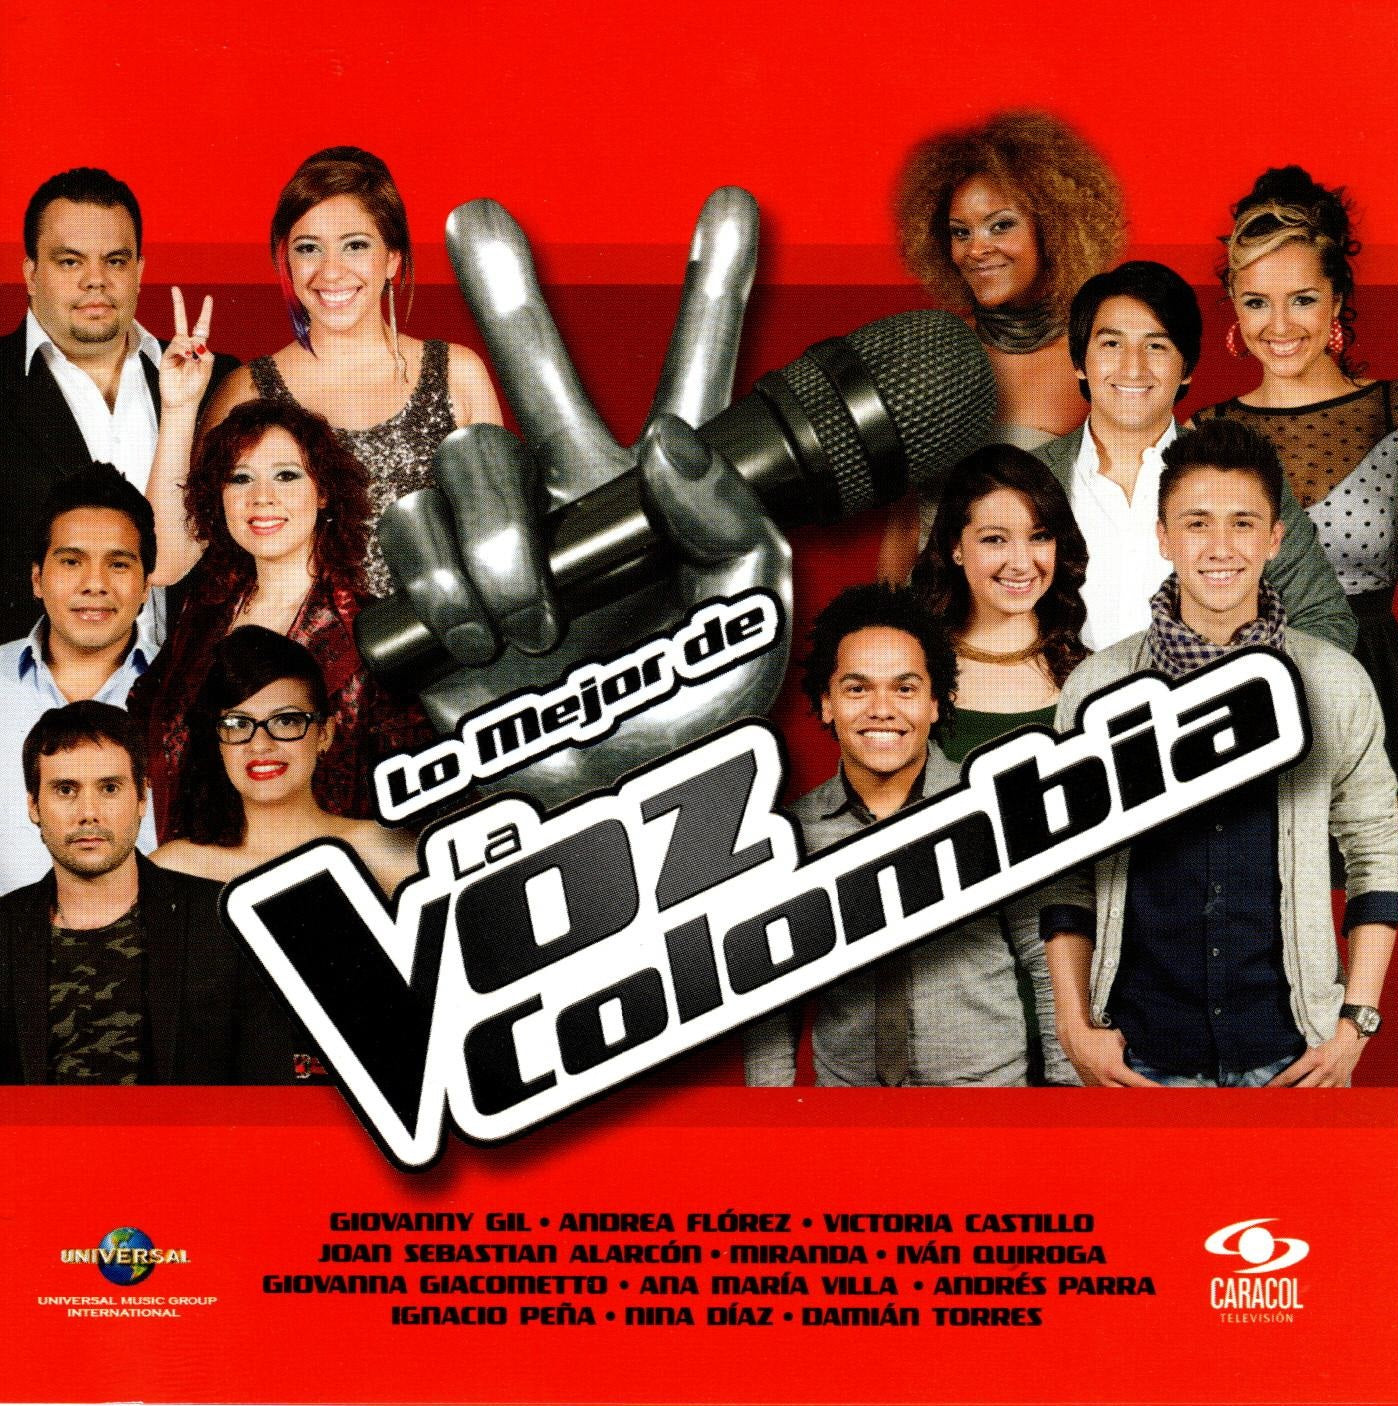 CD Lo mejor de La Voz Colombia 2012